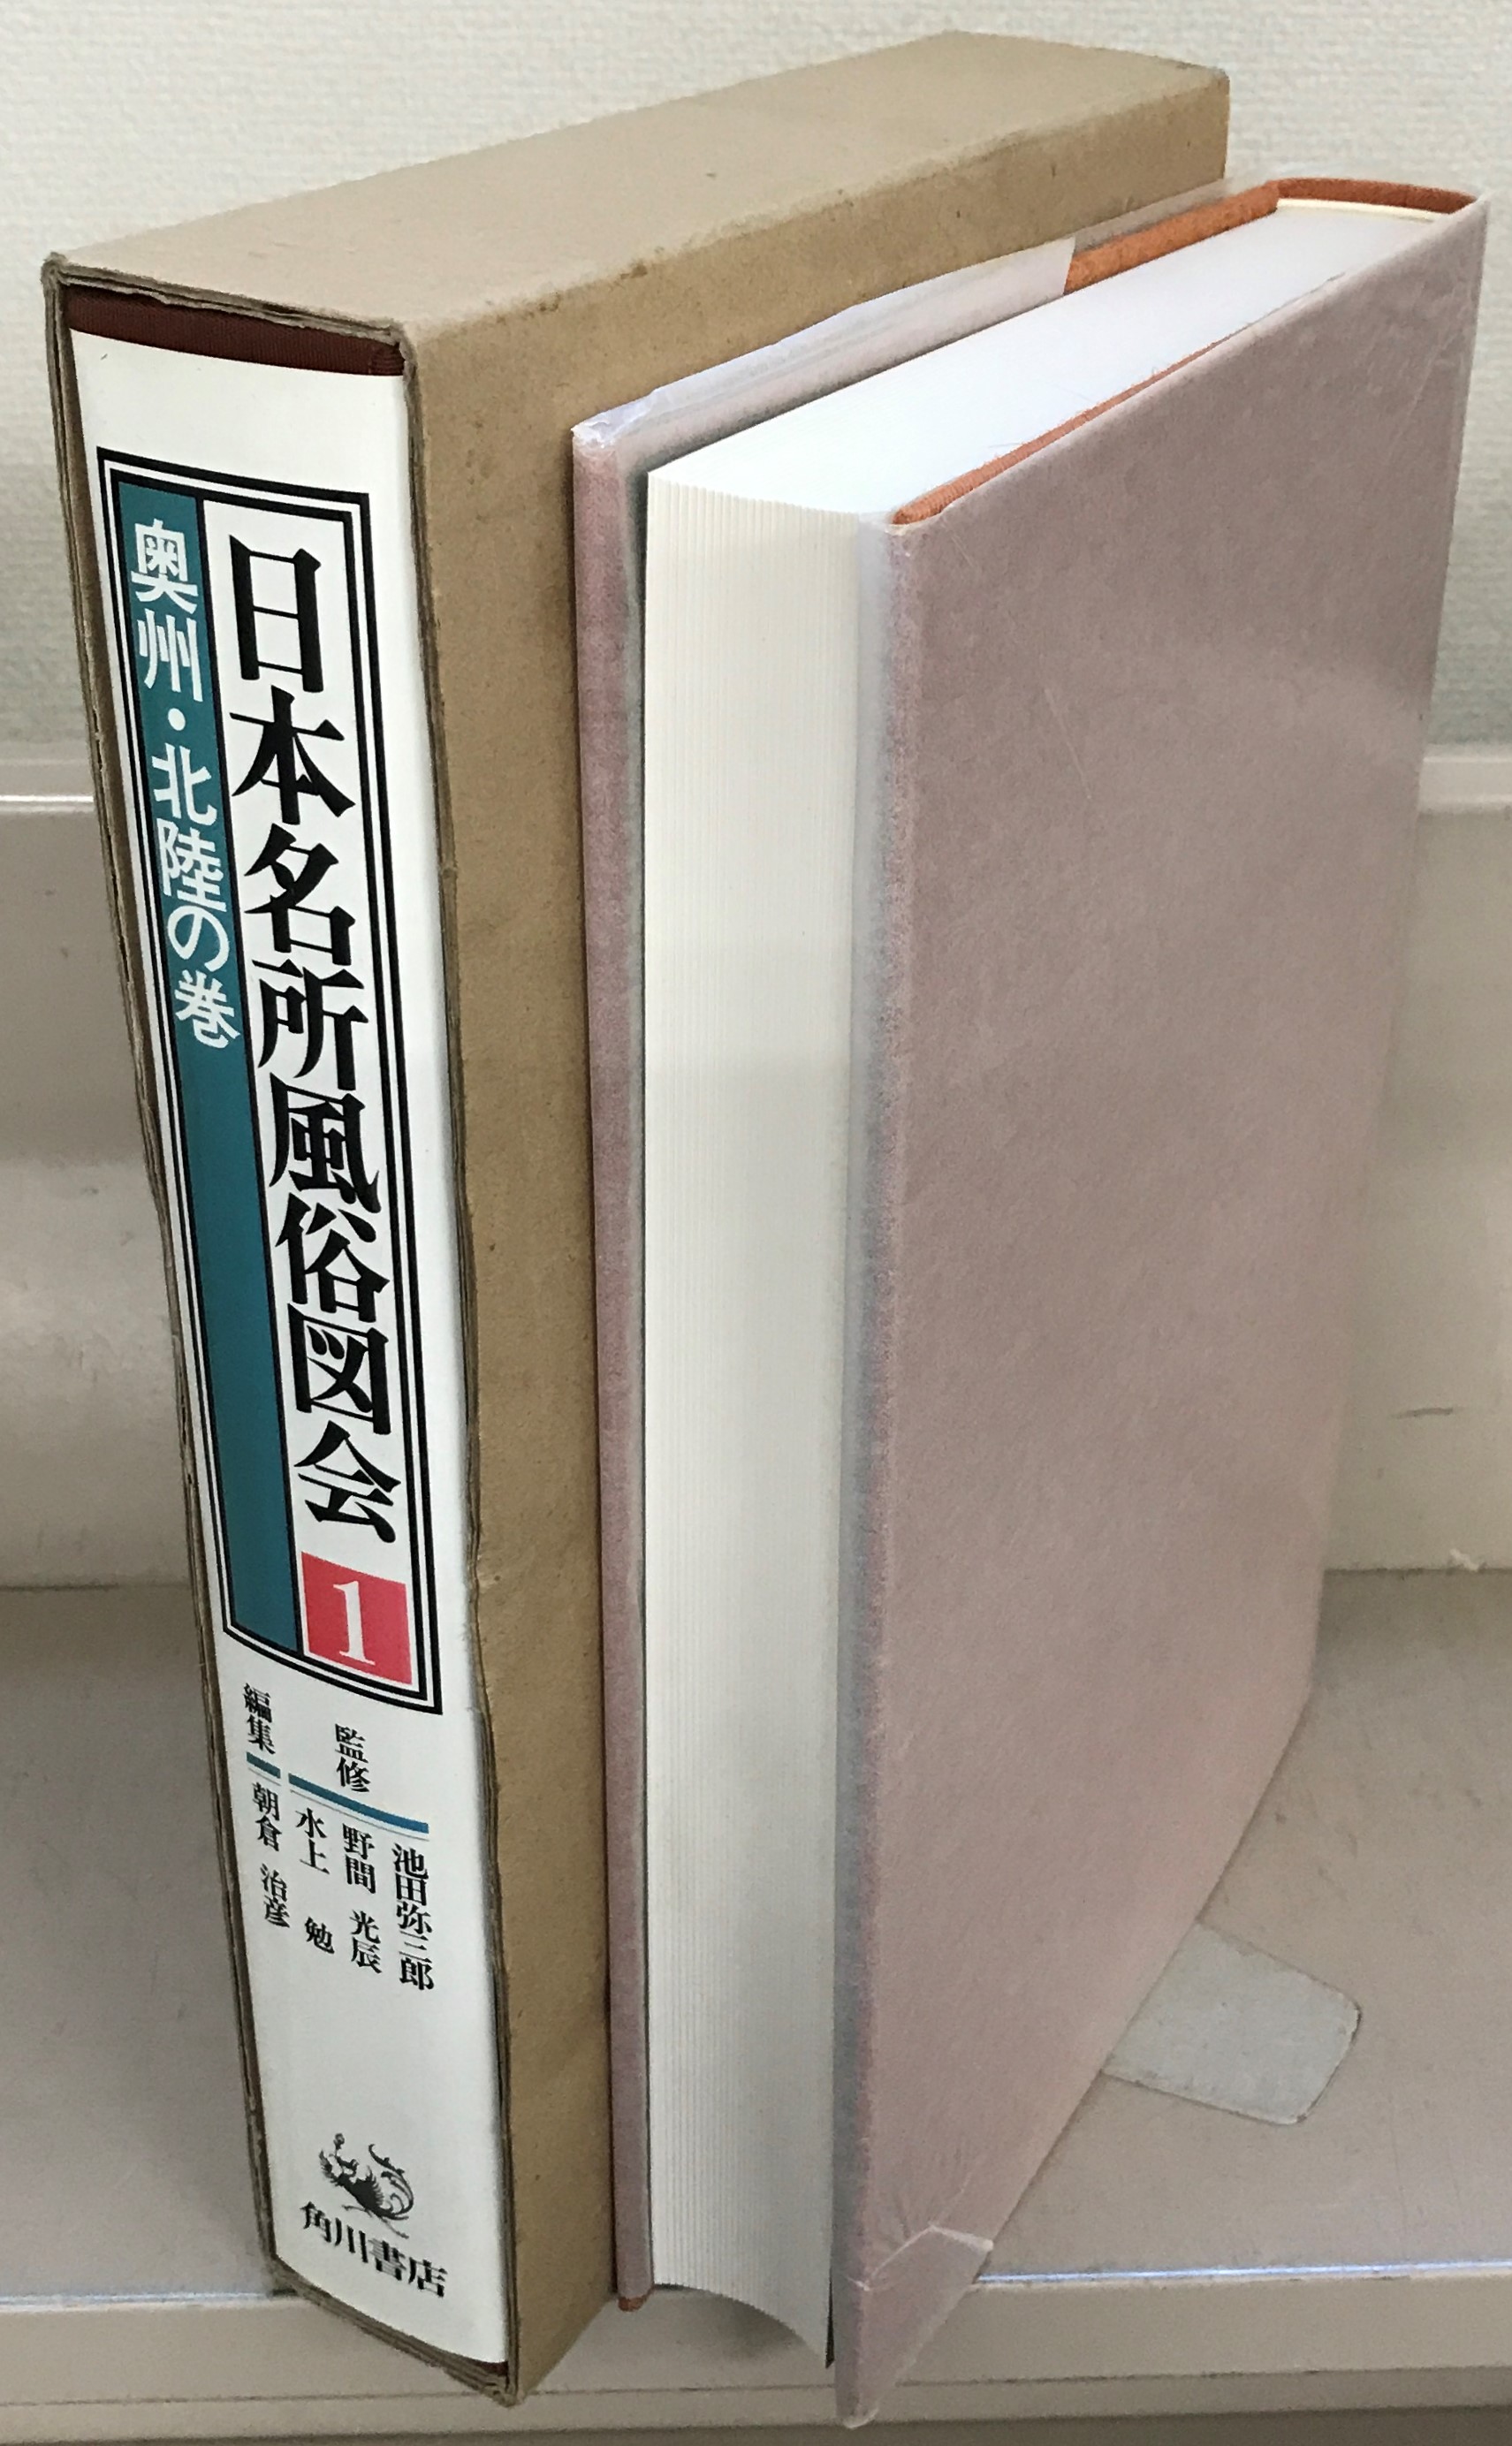 好評発売中 復刻本*活字化「日本名所風俗図会8」の「京都の巻2」竹村